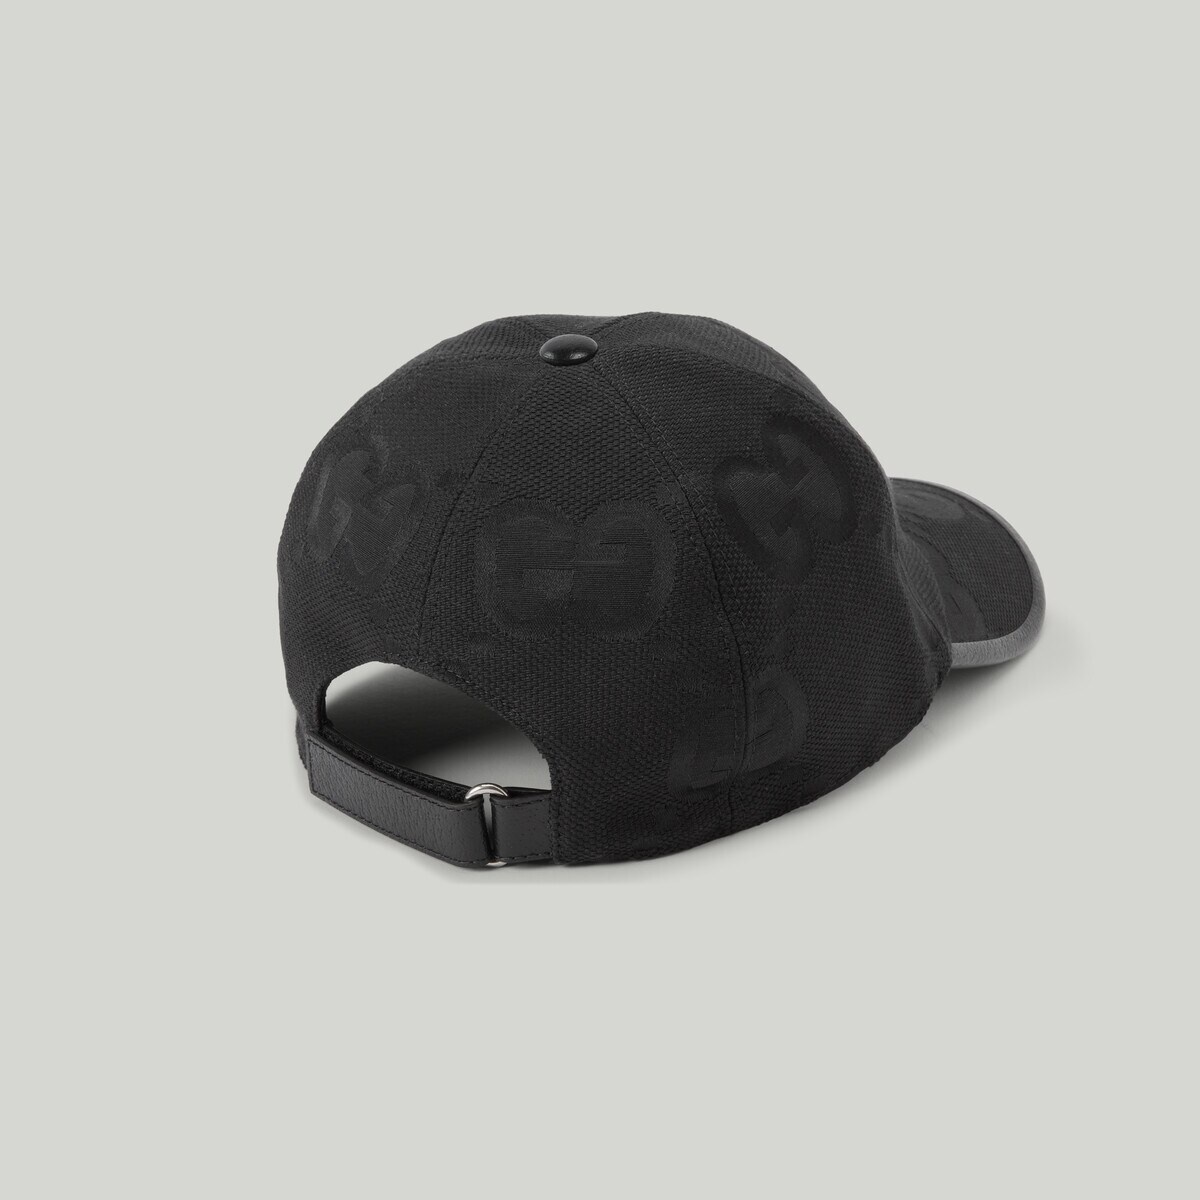 Jumbo GG baseball hat - 3